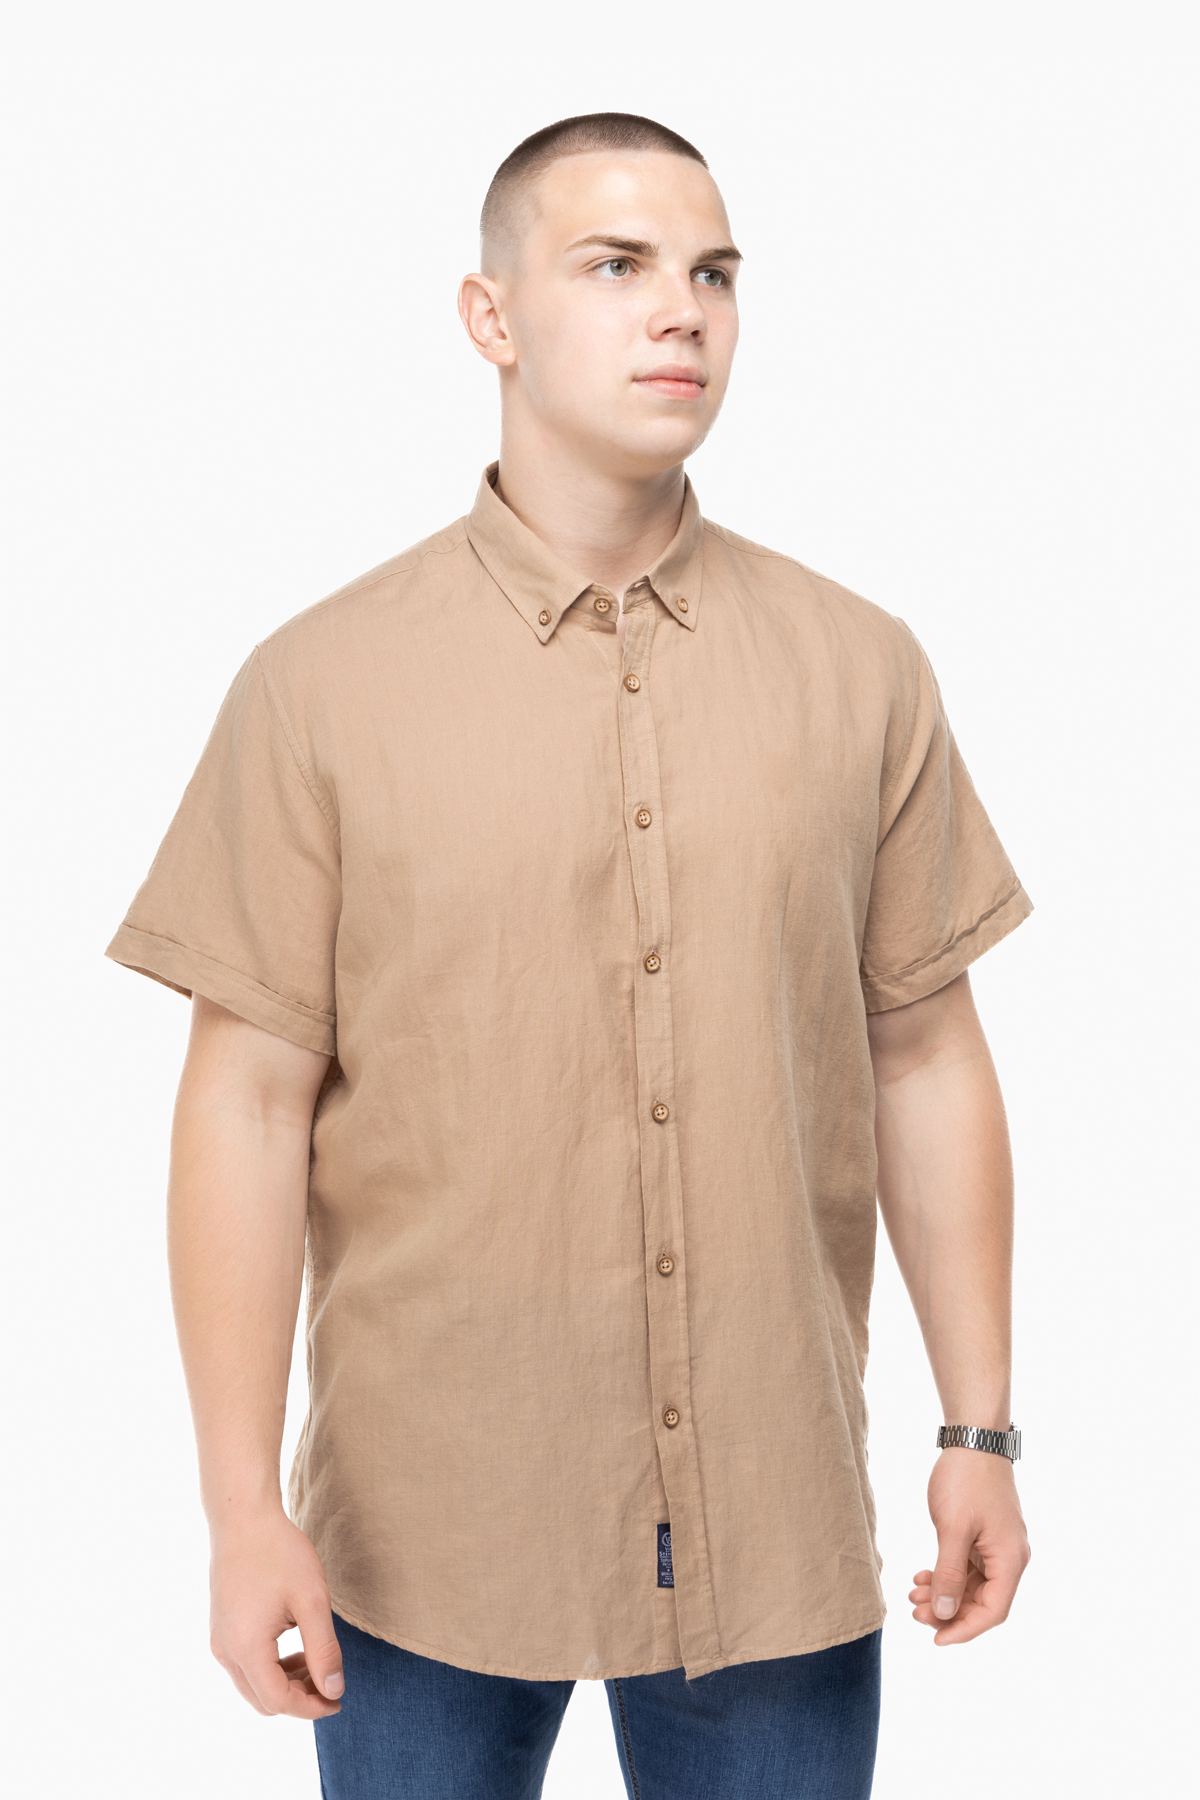 Рубашка классическая однотонная мужская Stendo 14215 5XL Бежевый (2000989628521)